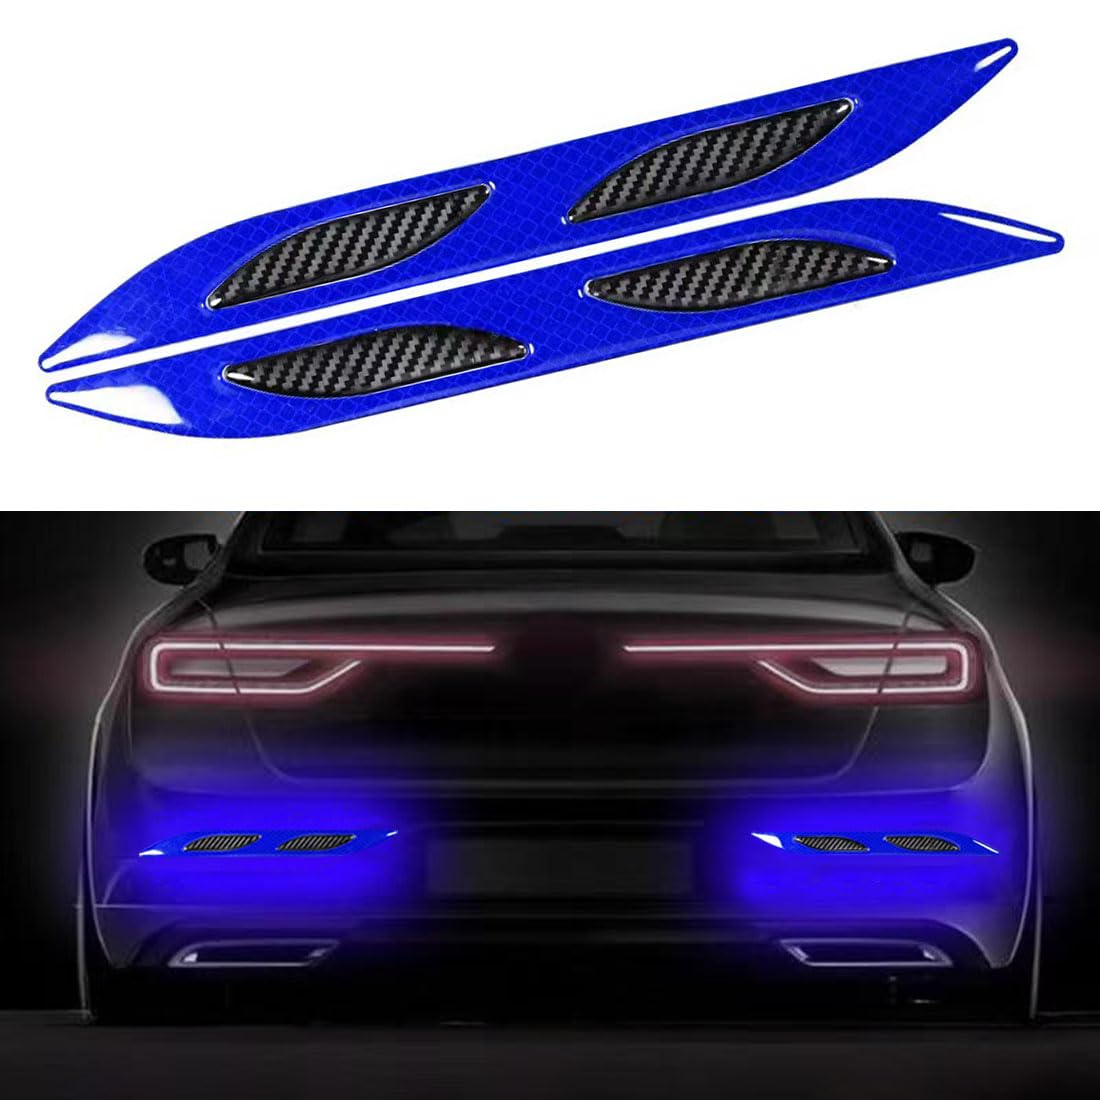 2 Stück Auto Starke reflektierende Streifen Aufkleber,Reflektierende Aufkleber für den Kofferraum,Reflektierende Sicherheits-Warnstreifen-Aufkleber für Auto,LKW,Motorrad(Blau) von Lcxecnw